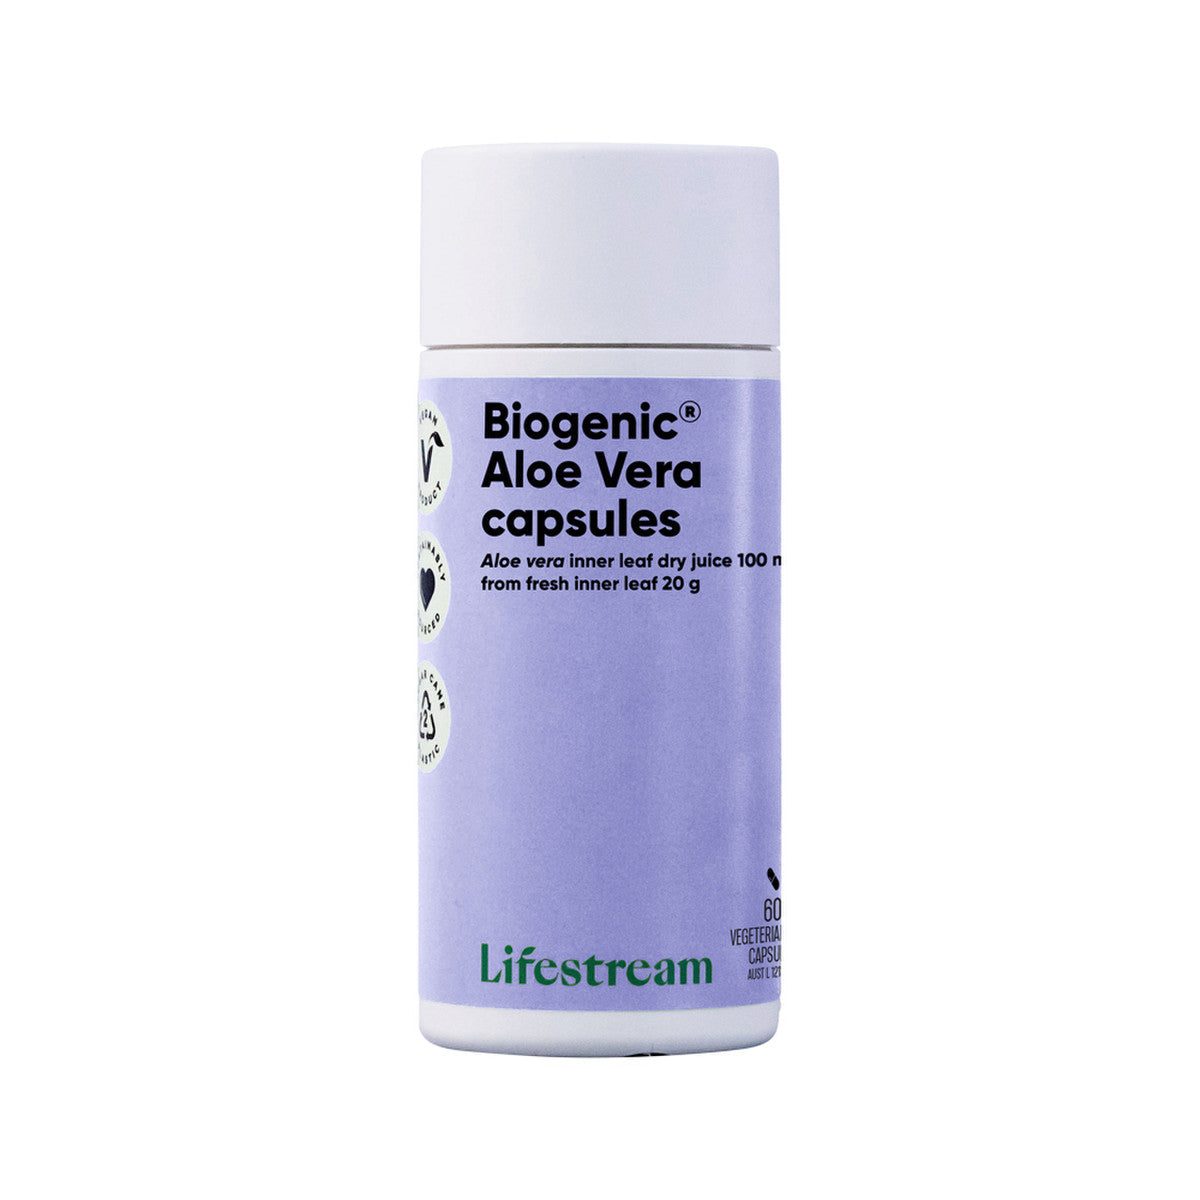 Lifestream - Biogenic Aloe Vera Capsules